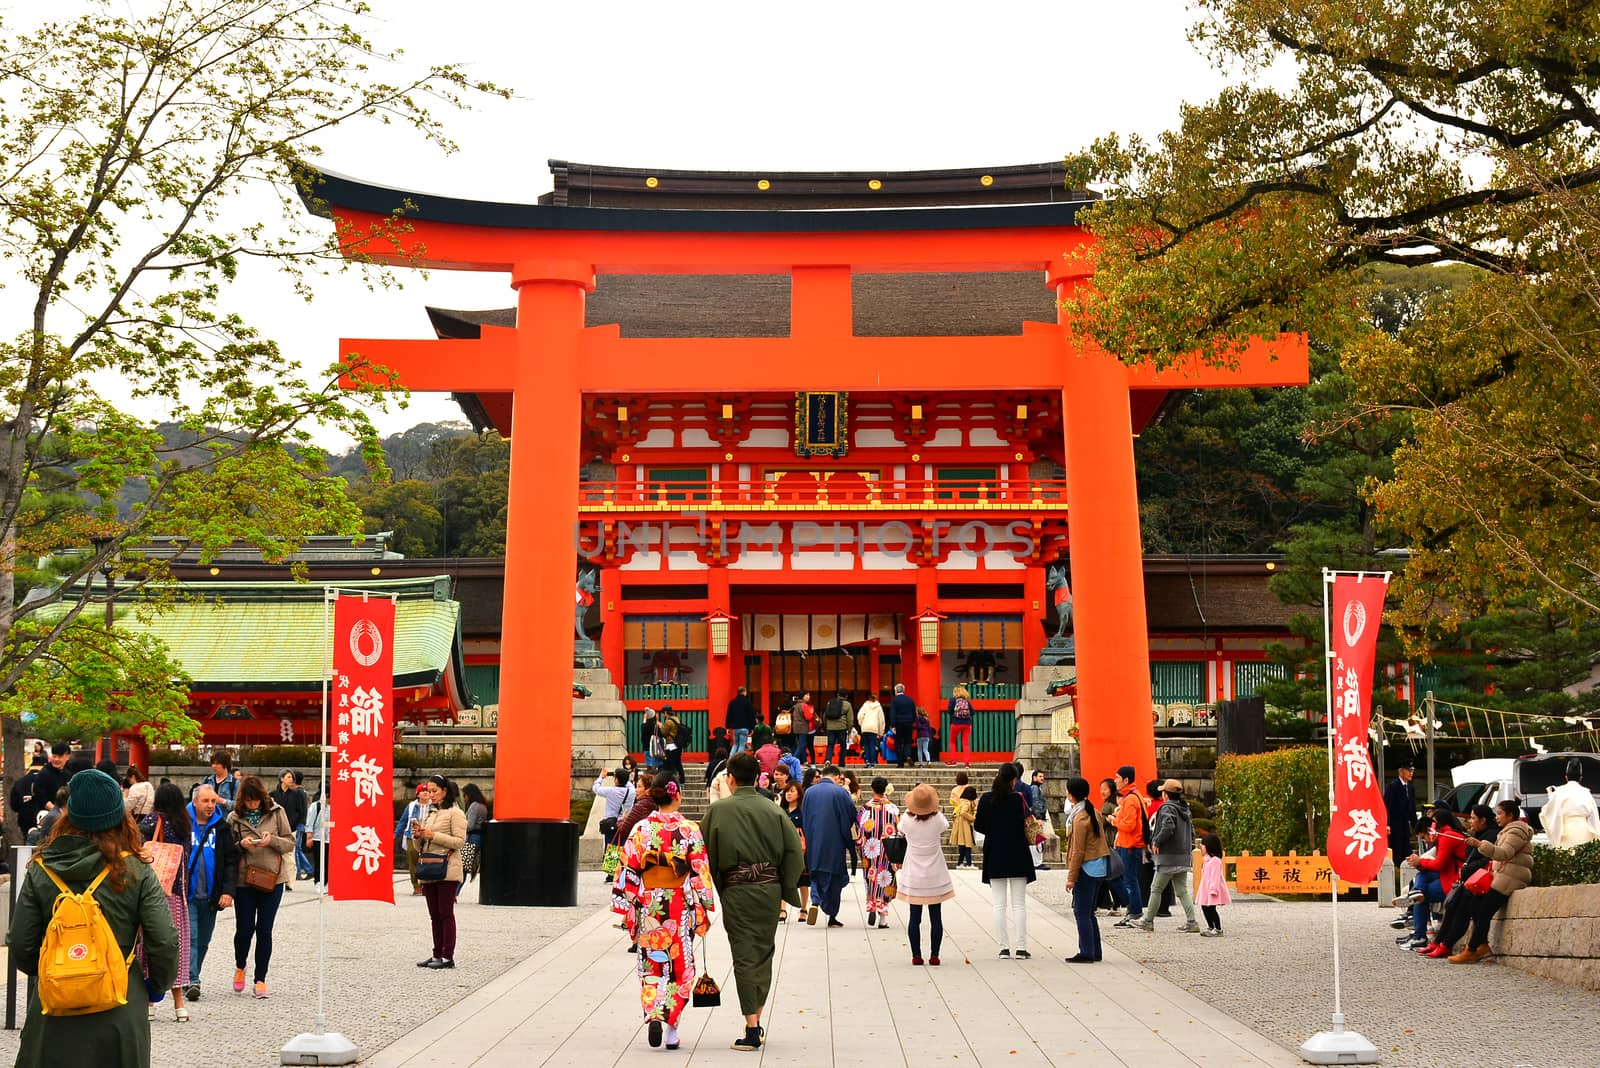 Fushimi Inari Taisha Japanese gate torii in Kyoto, Japan by imwaltersy